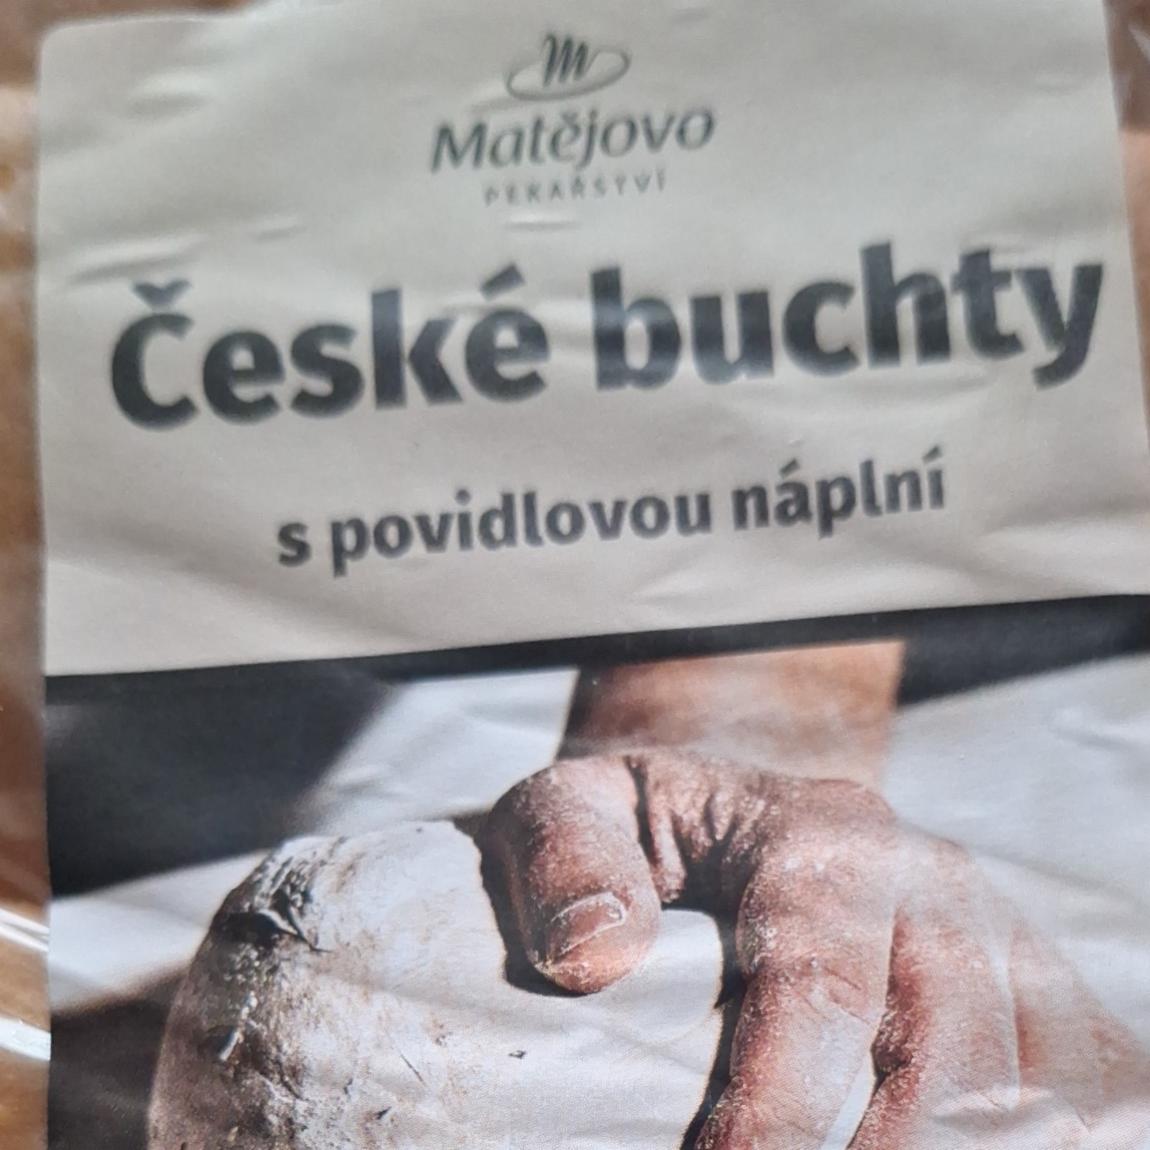 Fotografie - České buchty s povidlovou náplní Matějovo pekařství